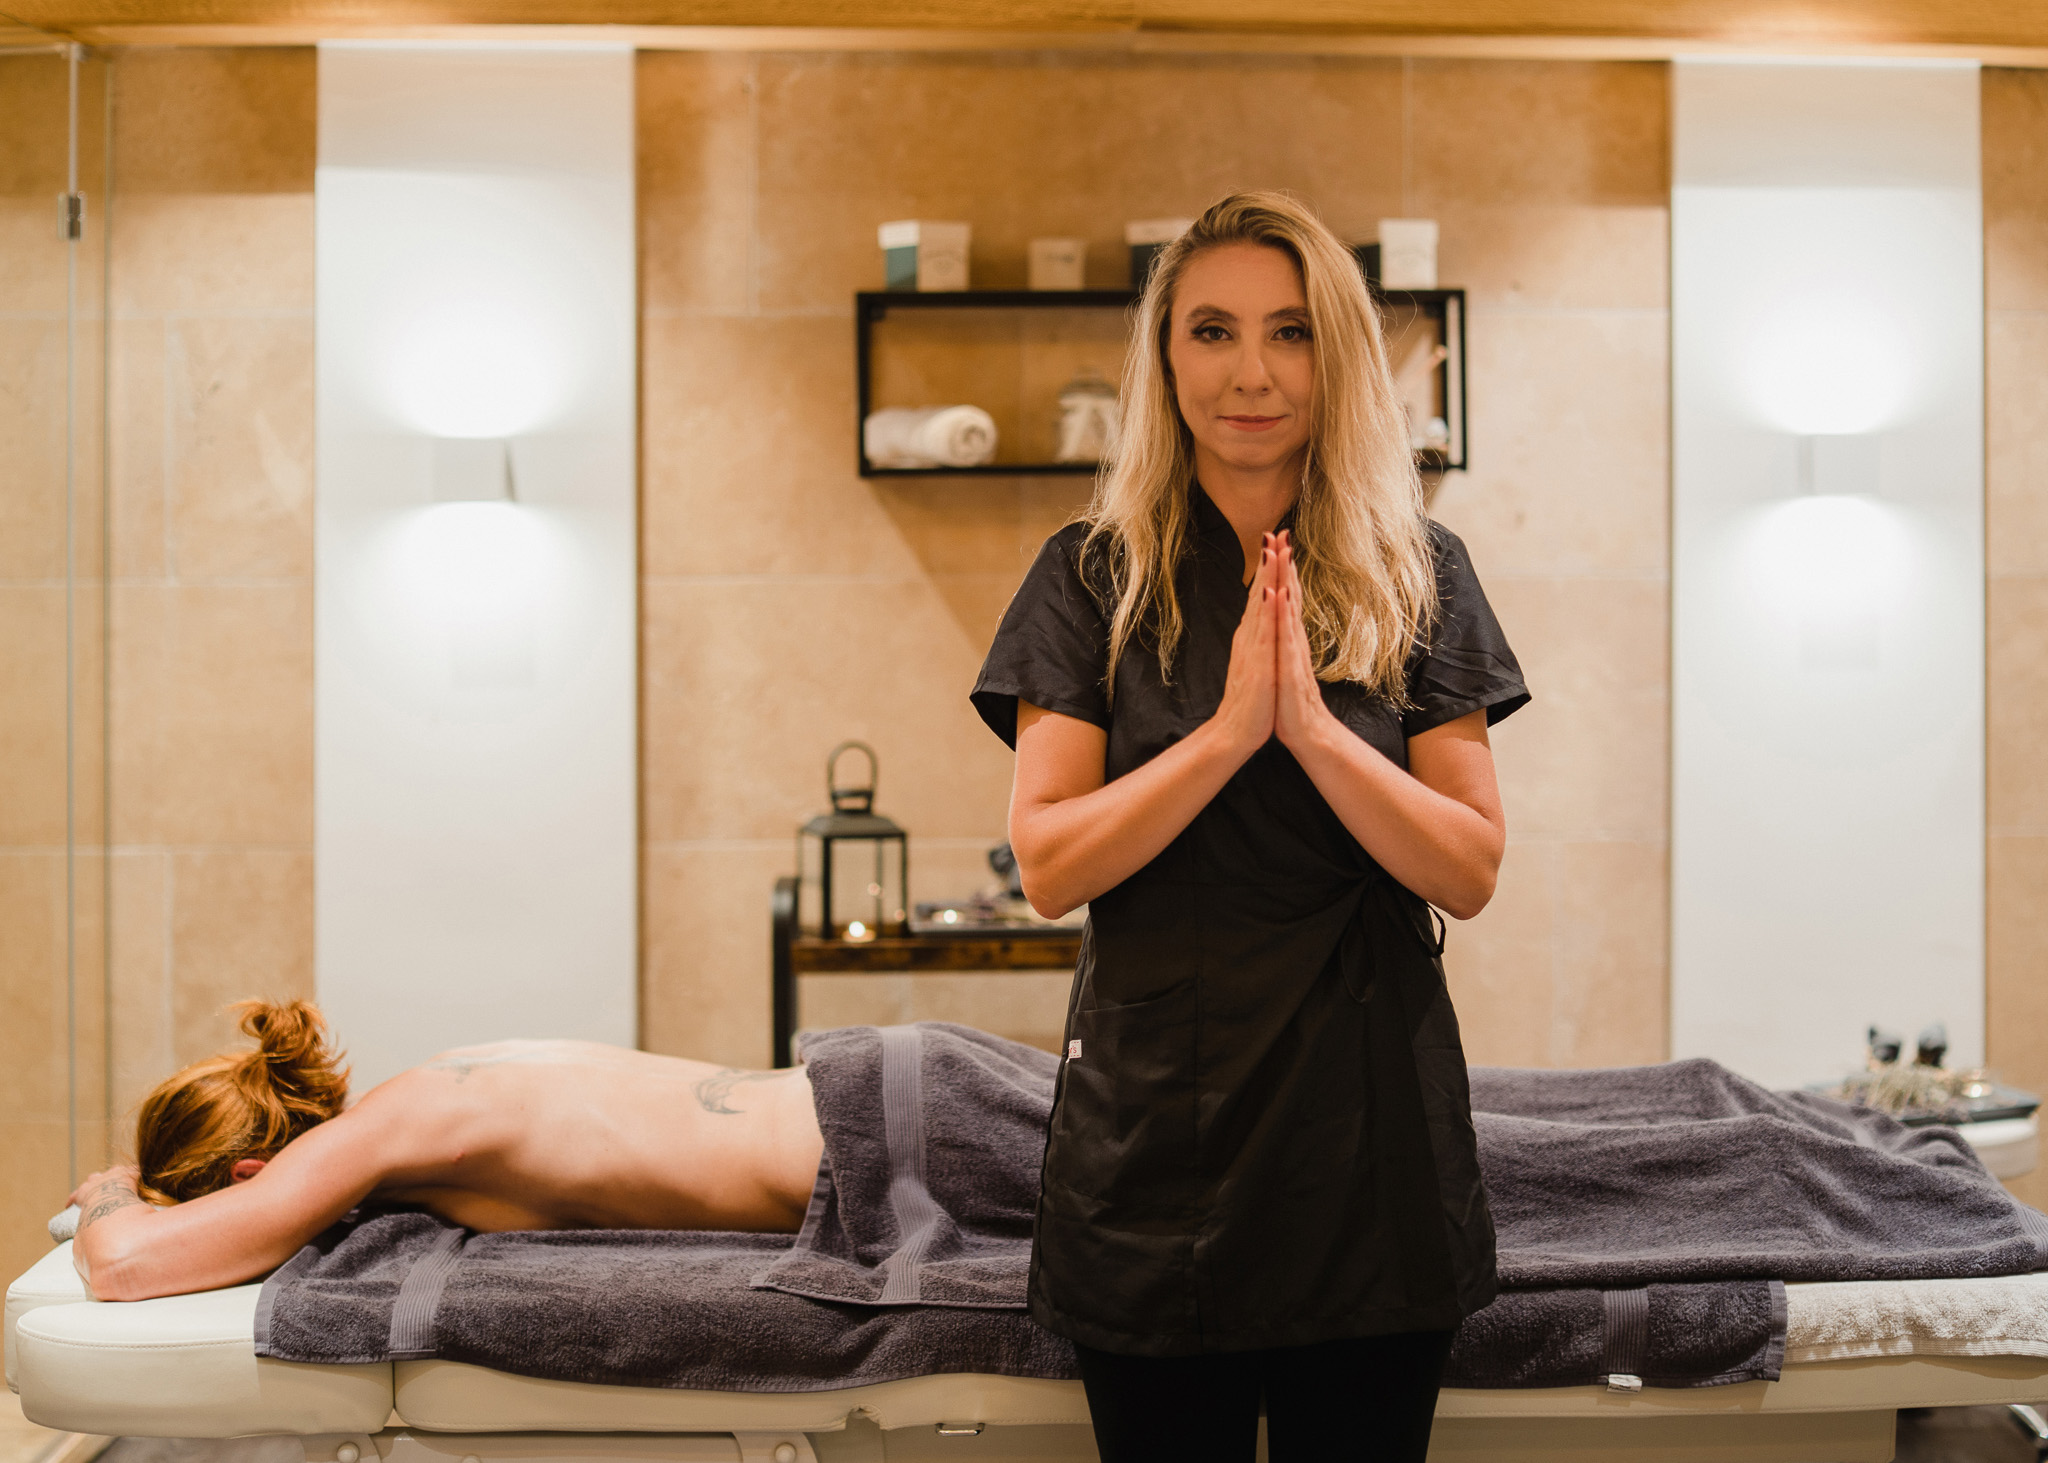 Monika Ostrowska farà parte della squadra Dream Massage® selezionata per Sanremo 